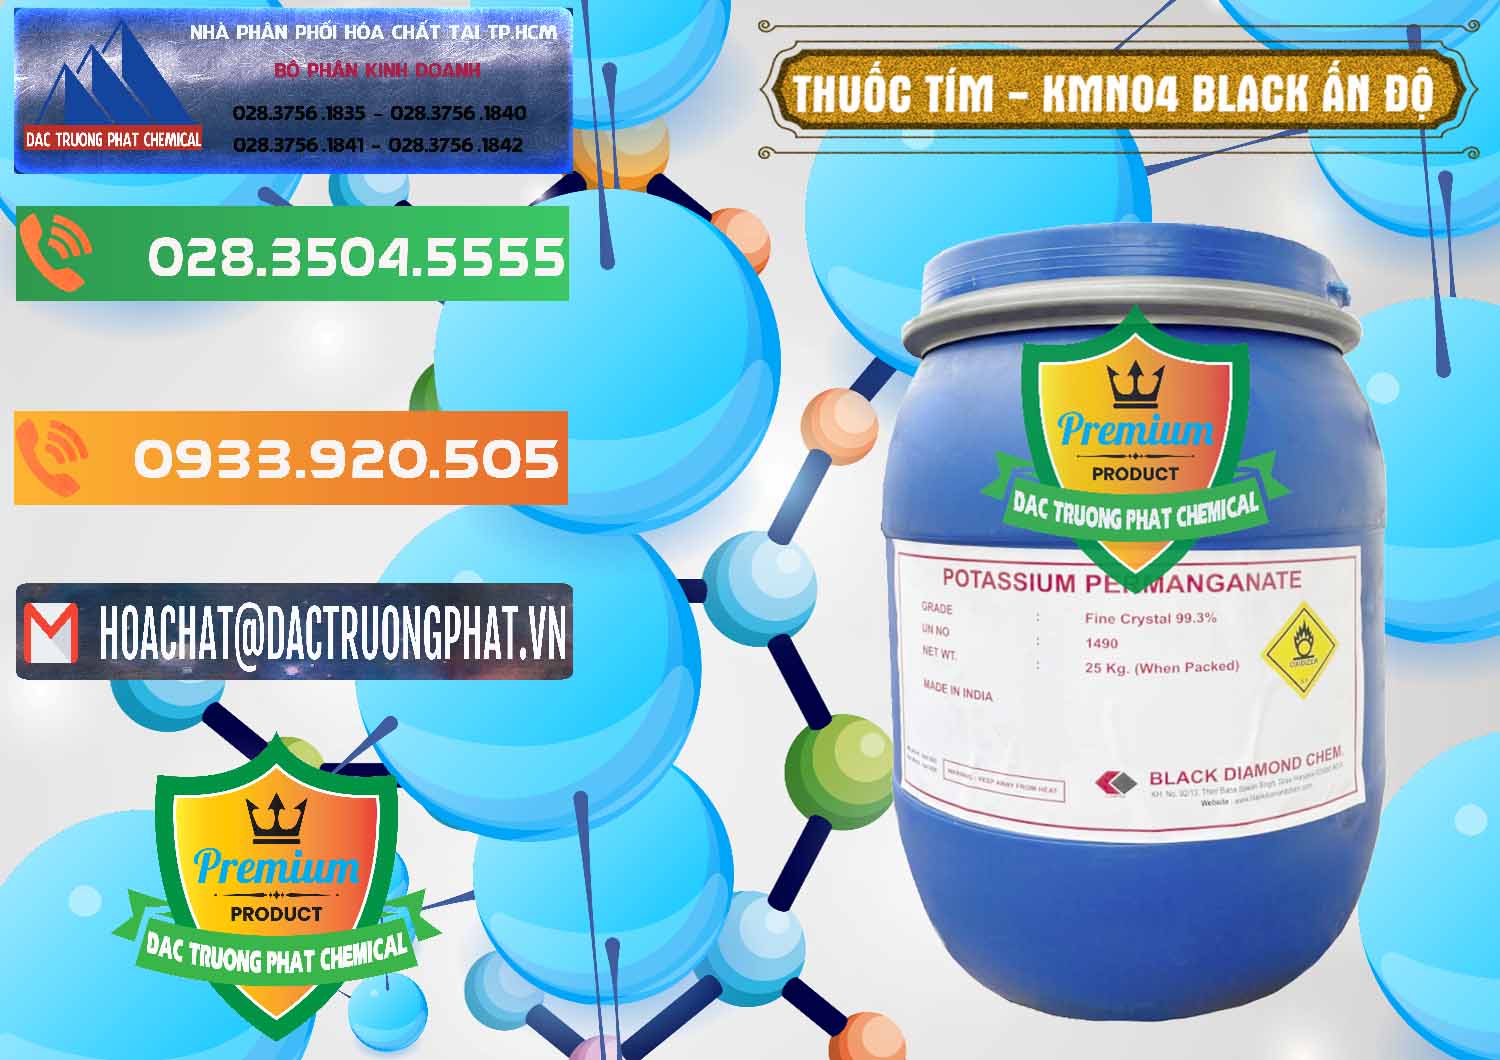 Nơi cung ứng và bán Thuốc Tím - KMNO4 Black Diamond Ấn Độ India - 0414 - Nơi phân phối ( cung ứng ) hóa chất tại TP.HCM - hoachatxulynuoc.com.vn